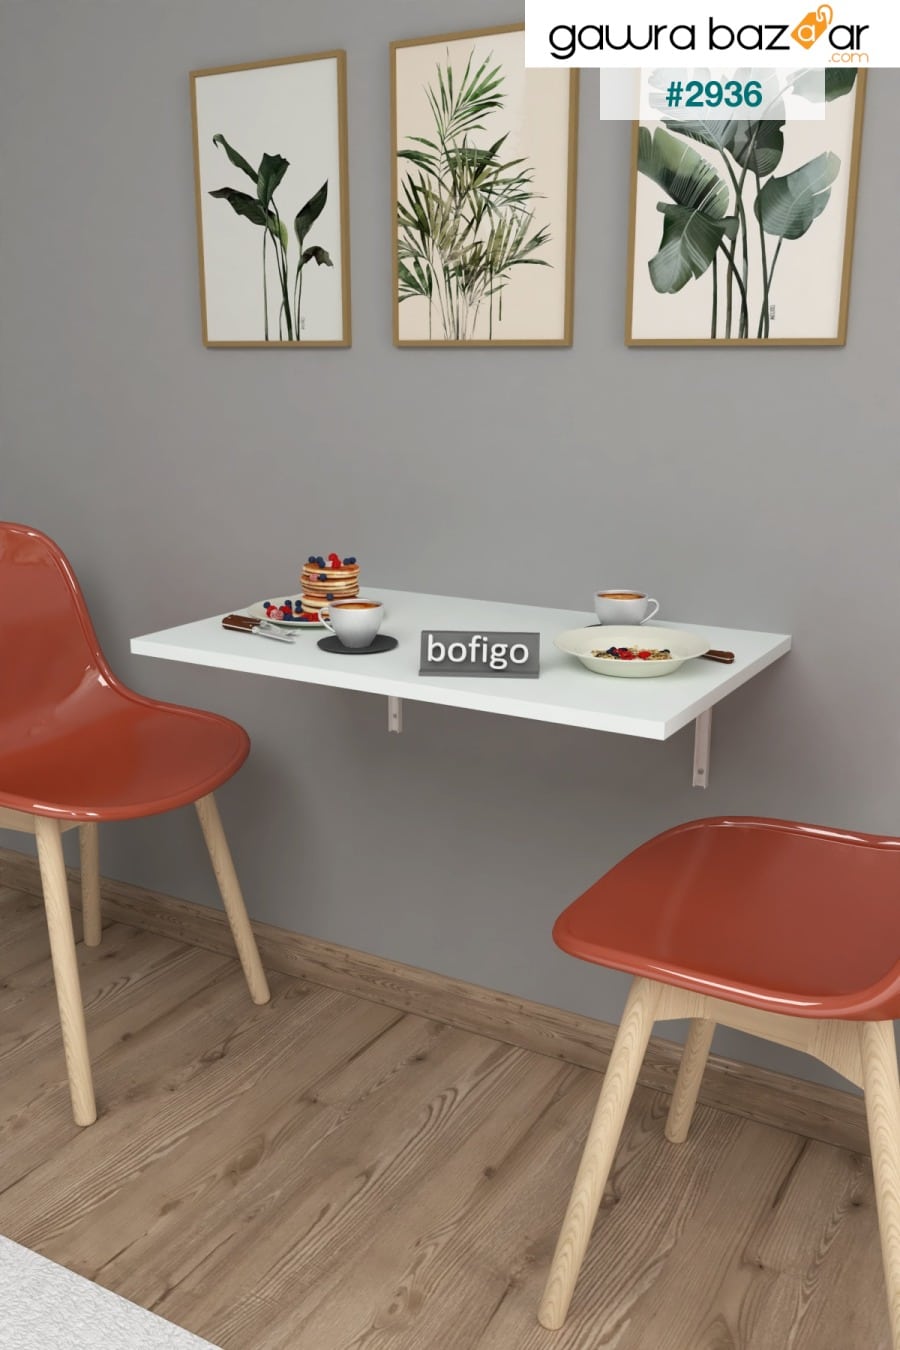 72 X 45 سم طاولة قابلة للطي الحائط طاولة مطبخ طاولة شرفة مكتب دراسة Bofigo 3